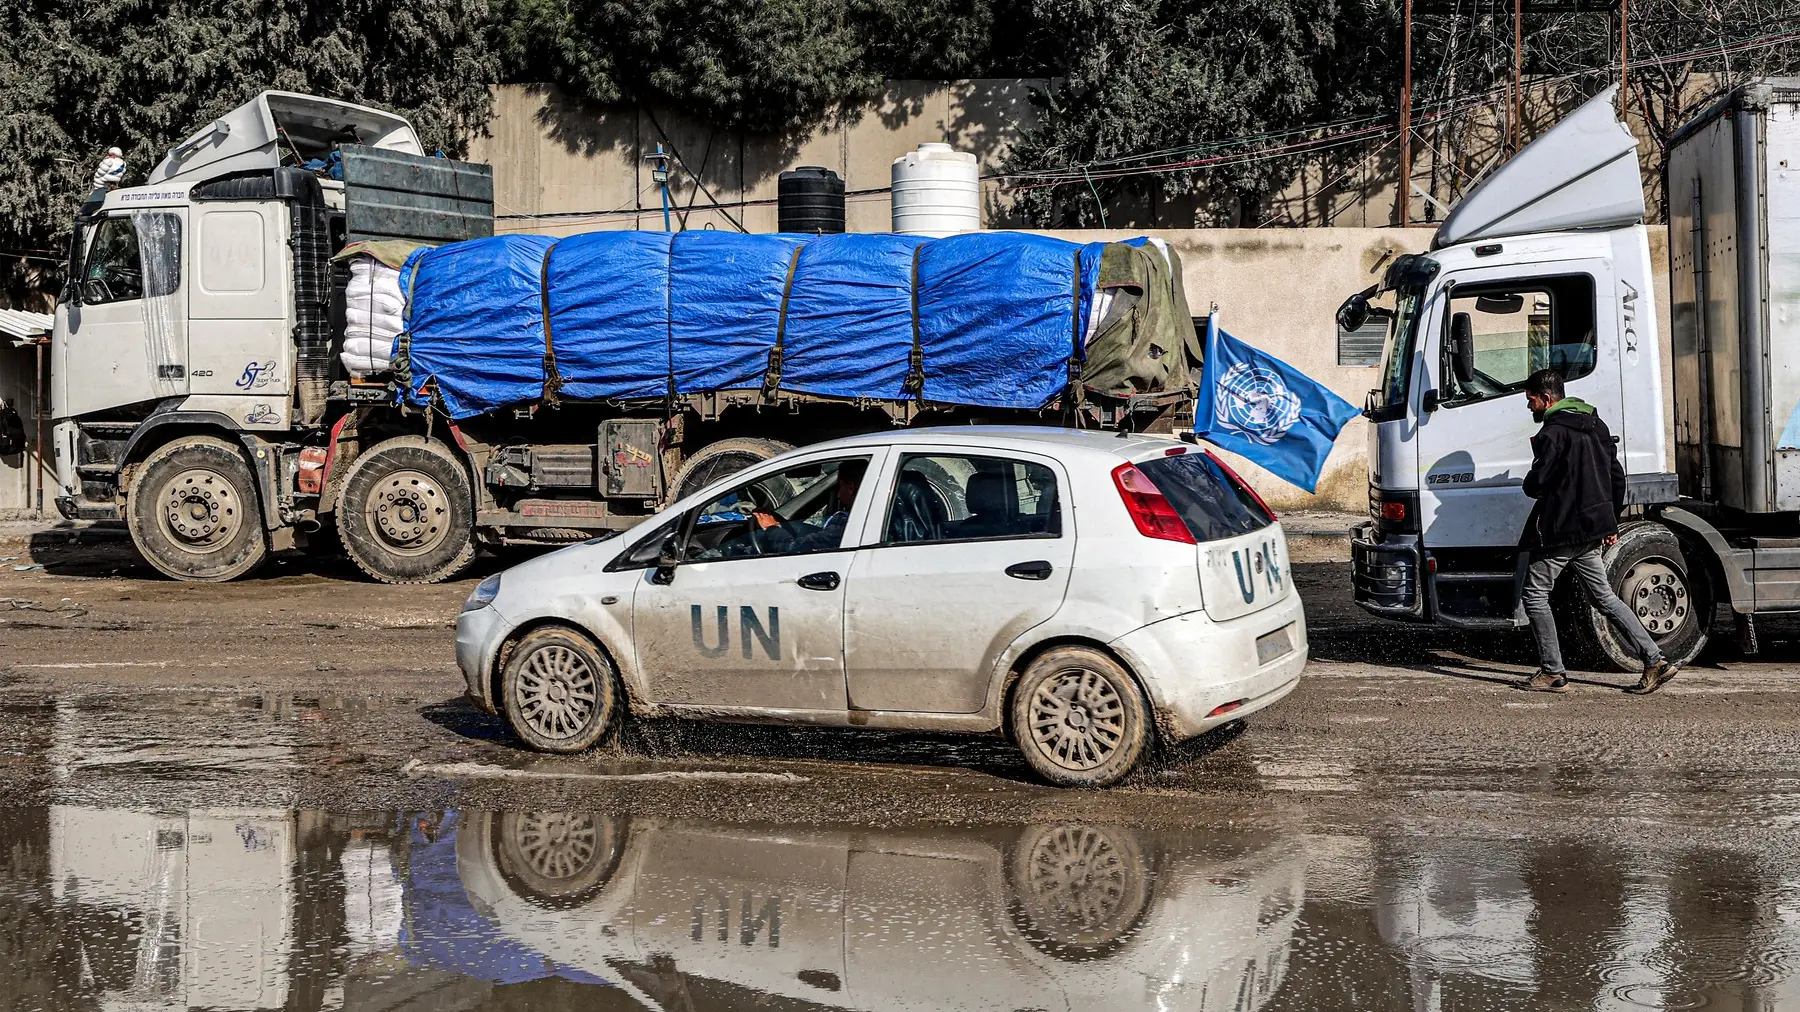 vozilo UN, ujedinjenih nacija, ujedinjene nacije, Pojas Gaze - 29 jan 2024 profimedia-66422652eb2de.webp